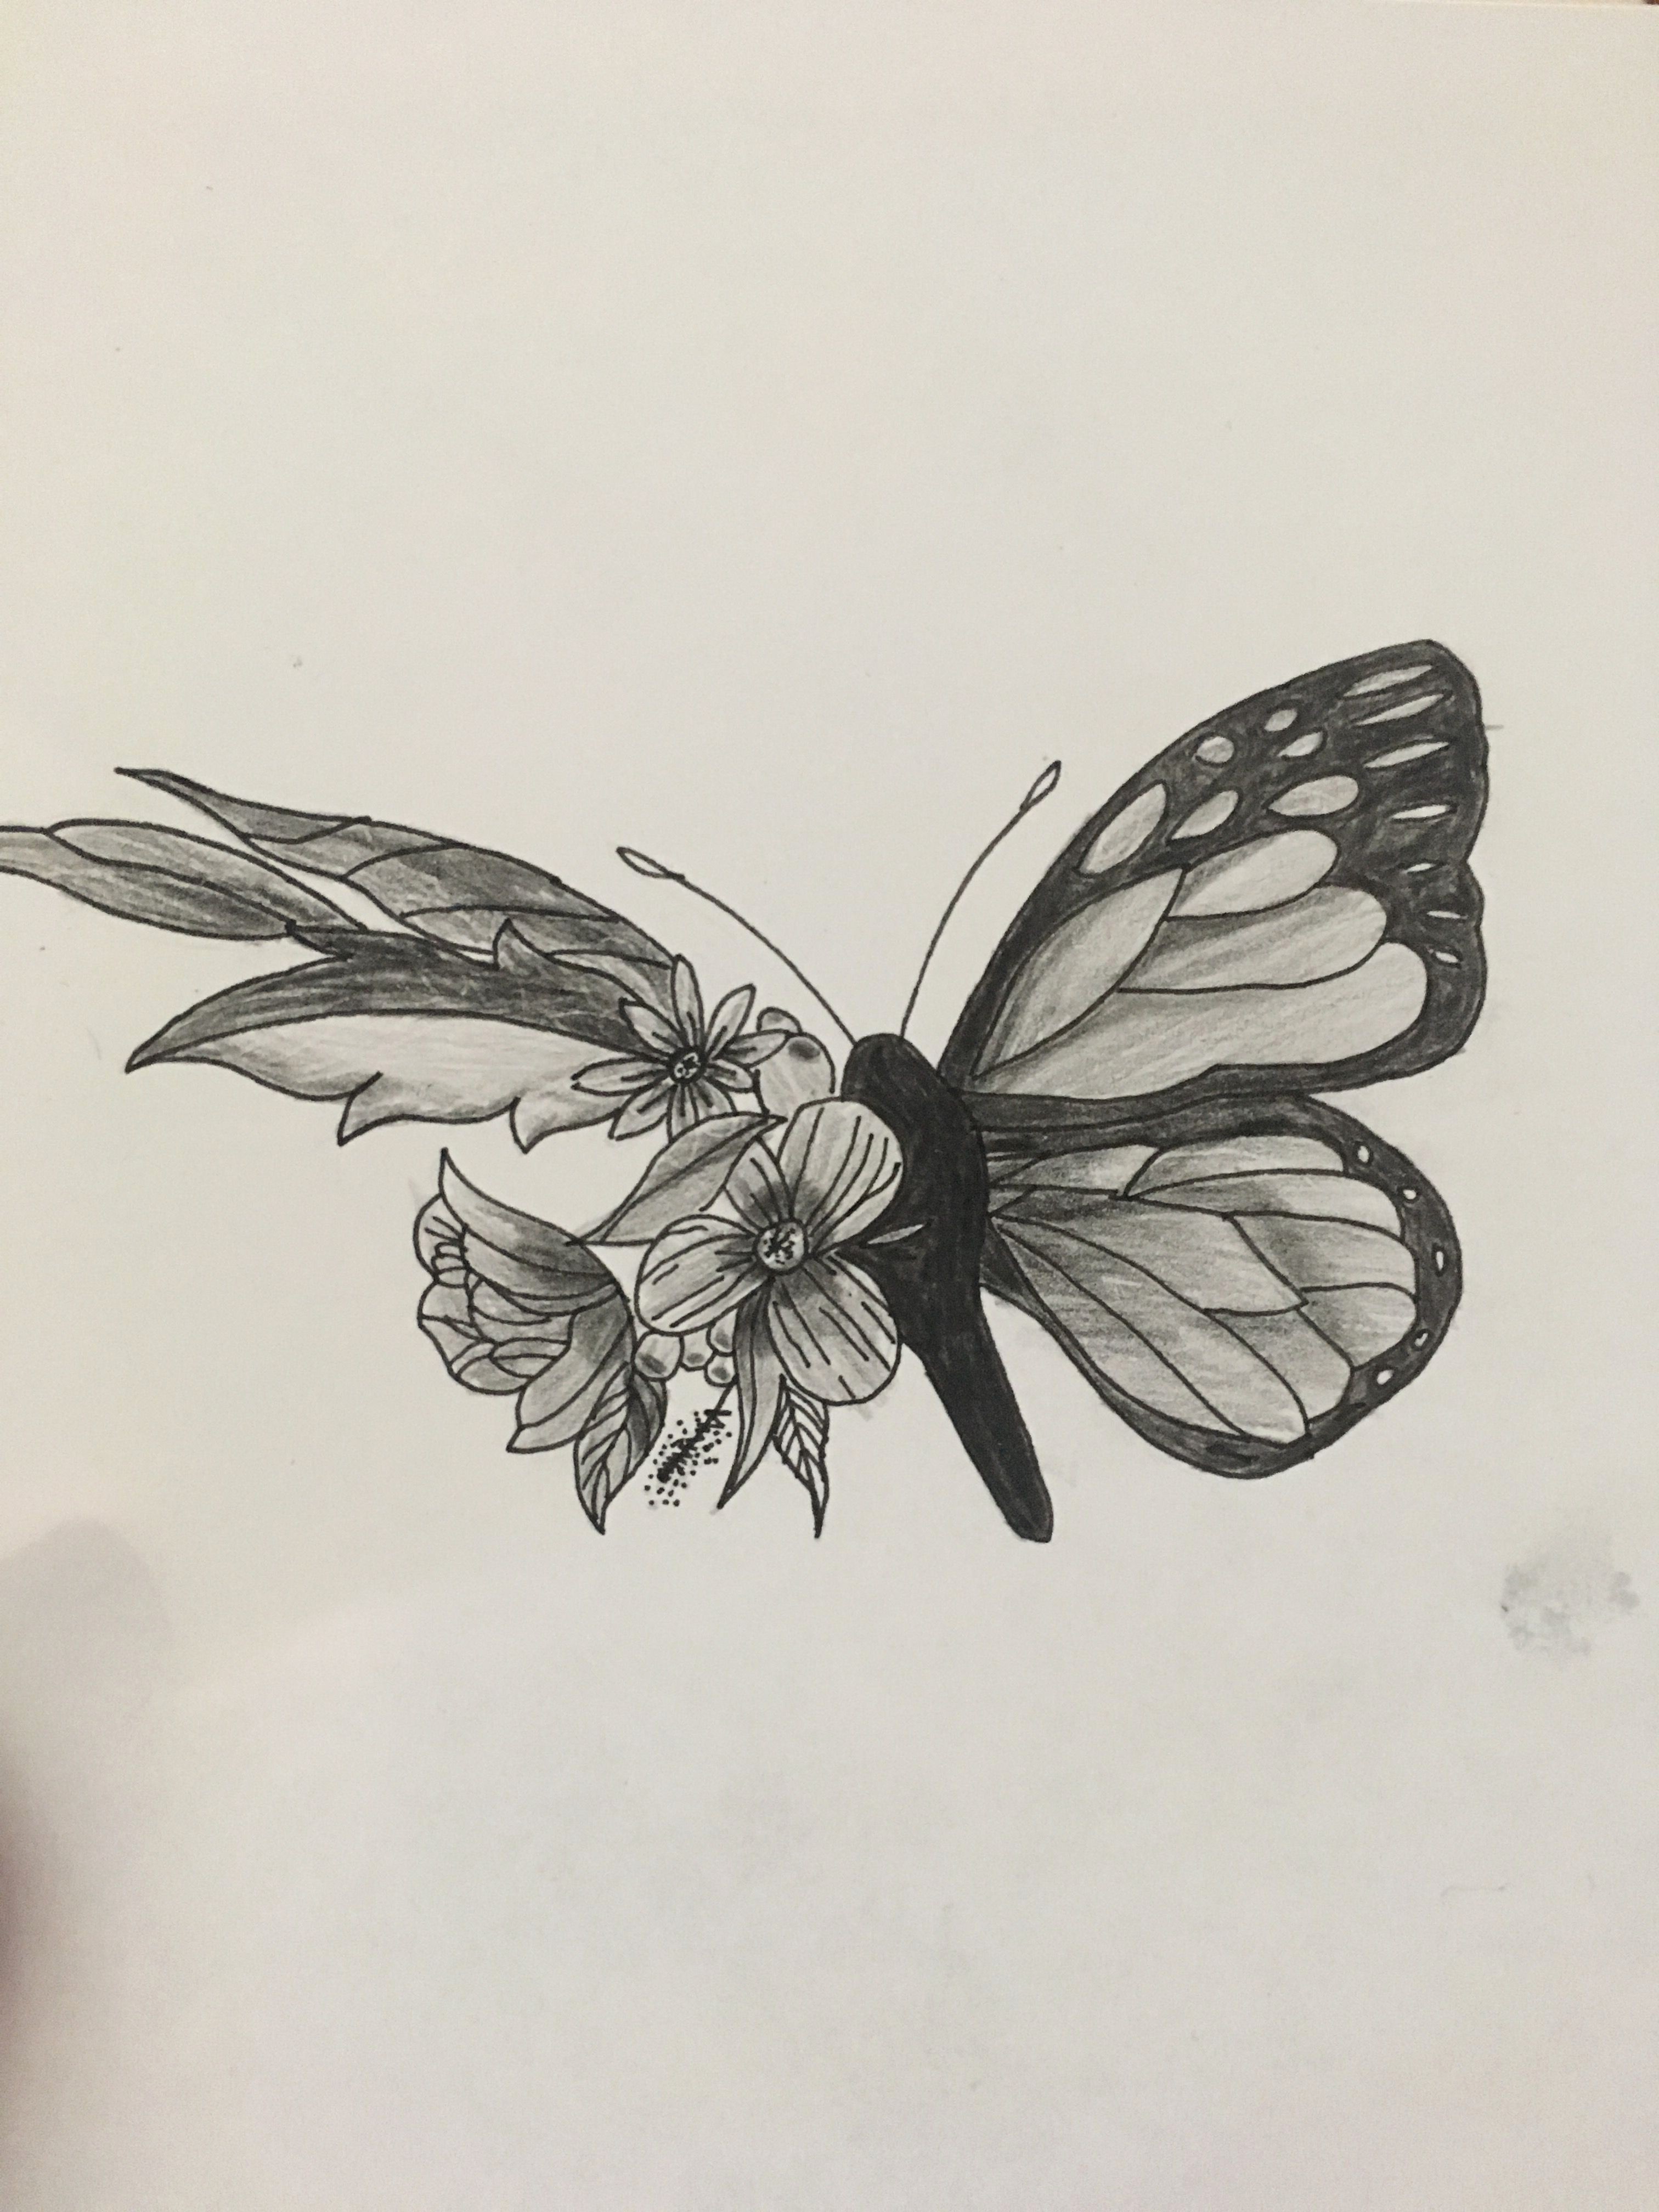 Butterfly sketch color elegant butterfly sketch main pinterest - www ...